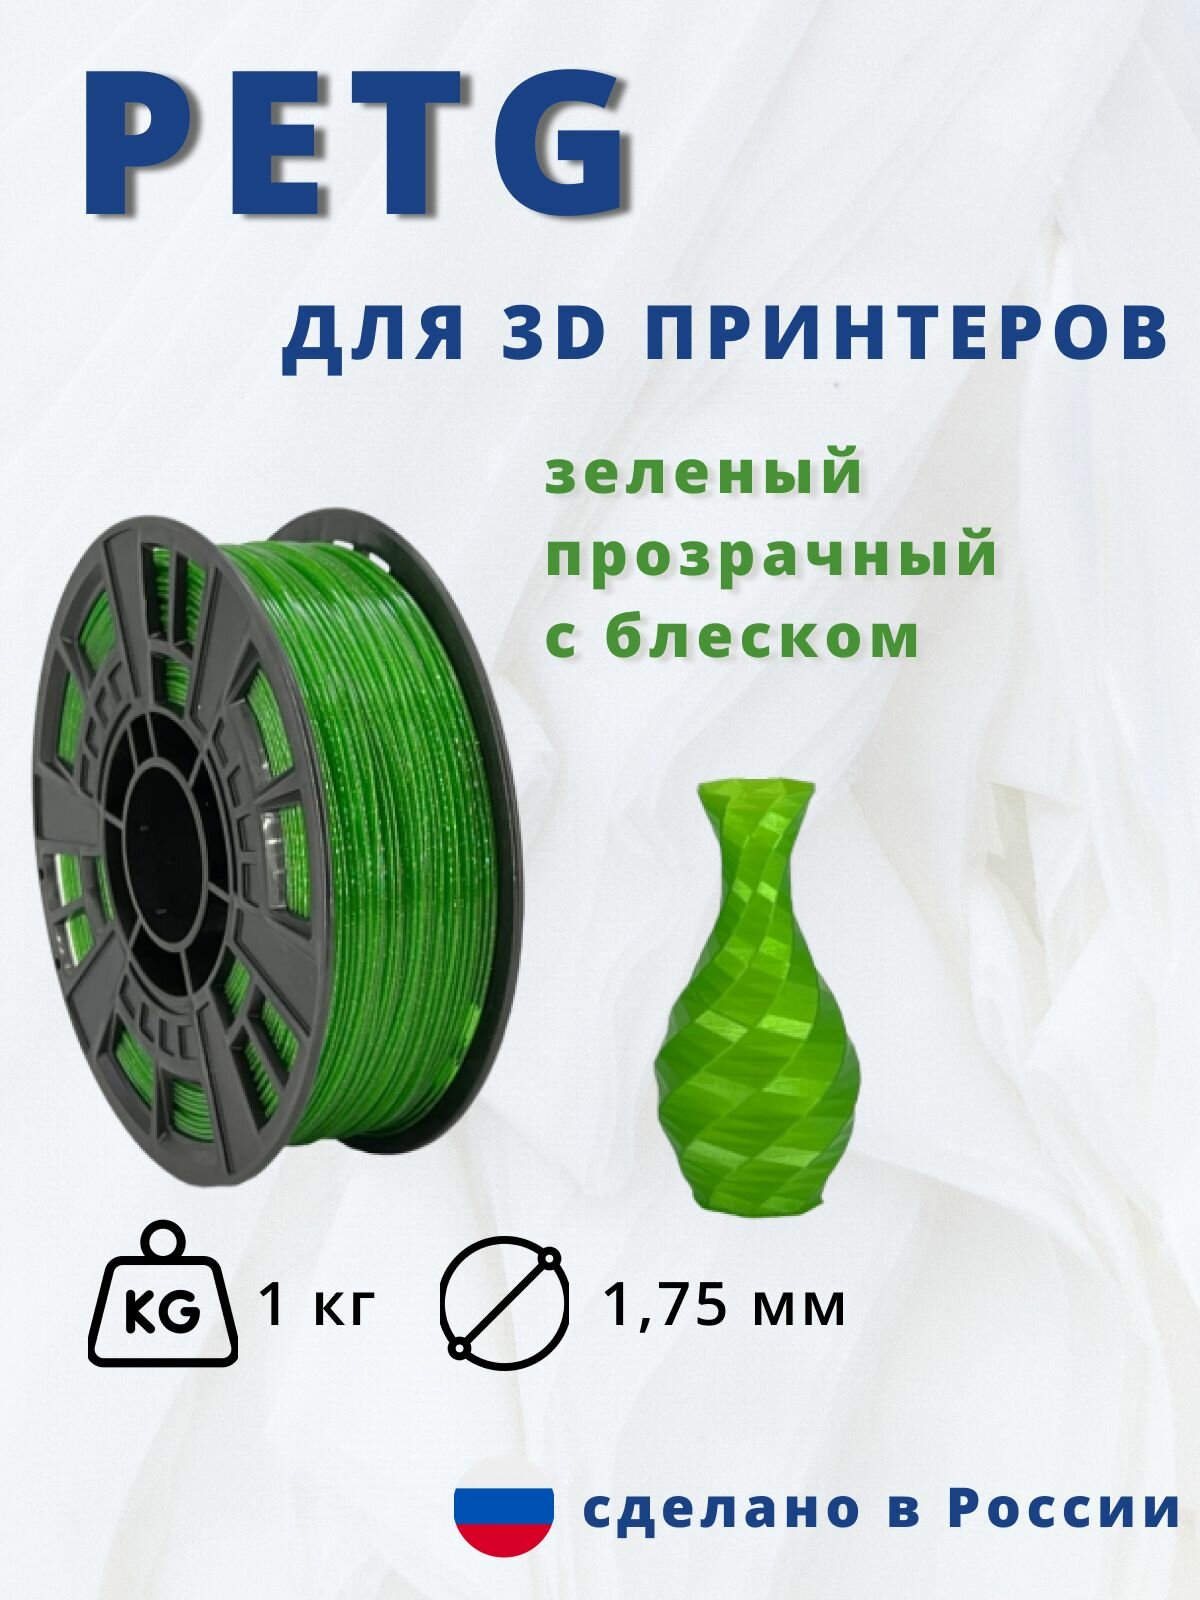 Пластик для 3д печати "НИТ" Petg зеленый прозрачный с блеском 1кг